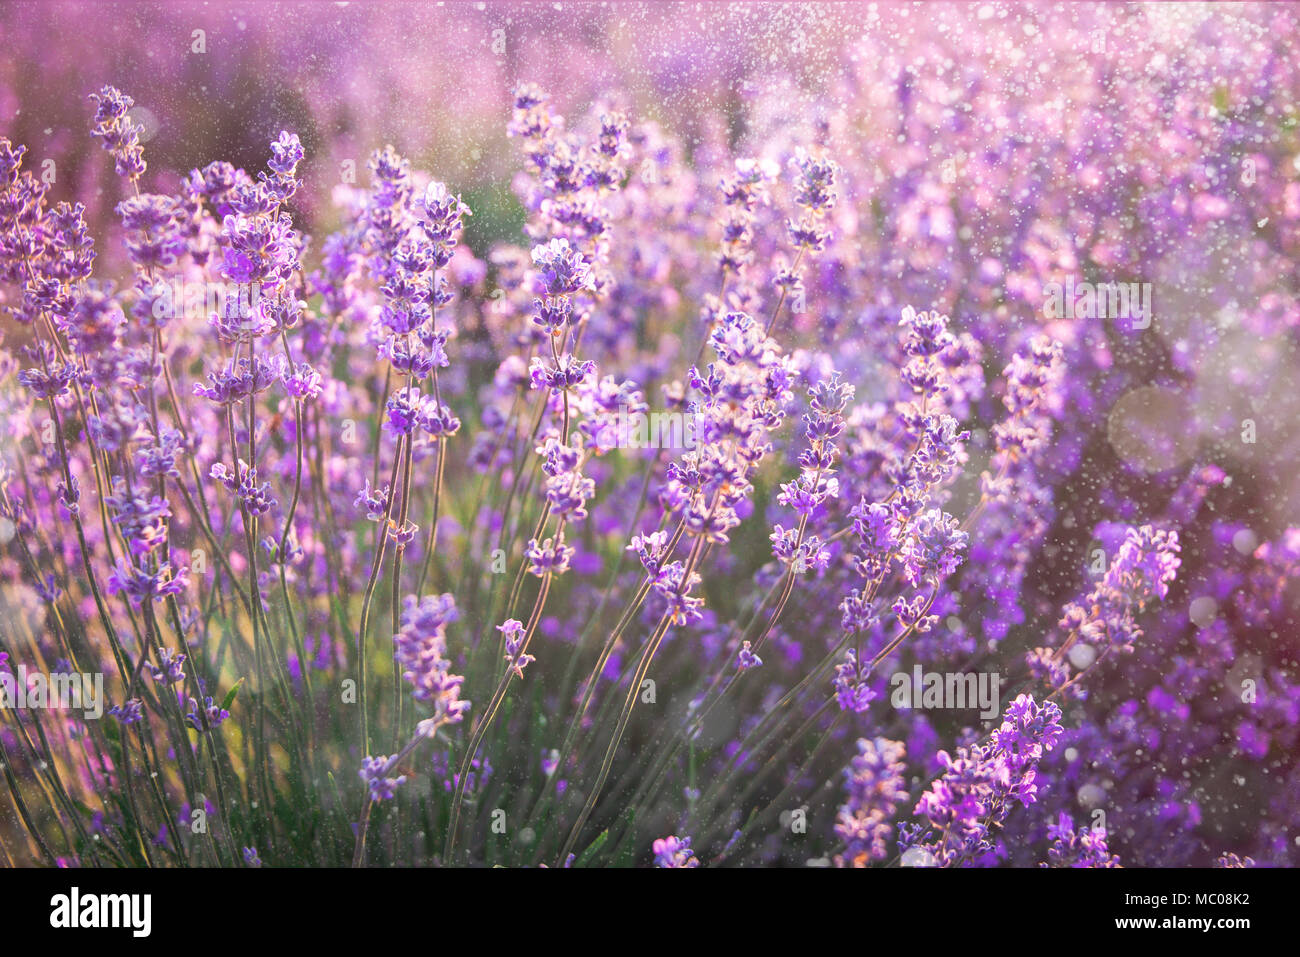 In der Nähe von blühenden Lavendel Blumen unter dem Sommer Sonne strahlen. Lavendel Hintergrund. Stockfoto